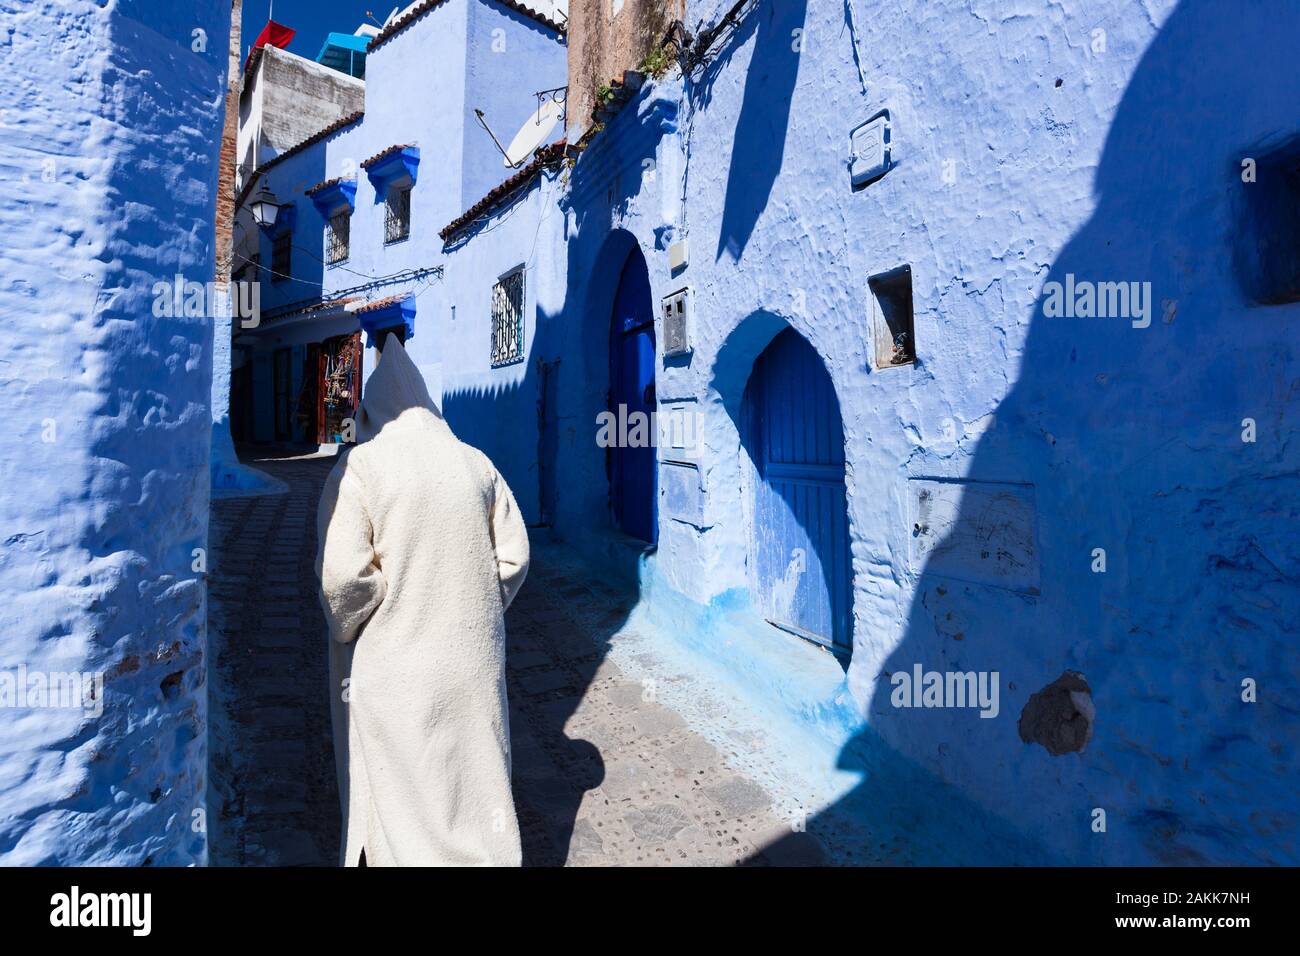 Un homme seul portant djellaba lumineux avec un capuchon qui couvre la tête de marcher dans la rue de la médina de Chefchaouen (également connu sous le nom de Chaouen), Maroc Banque D'Images